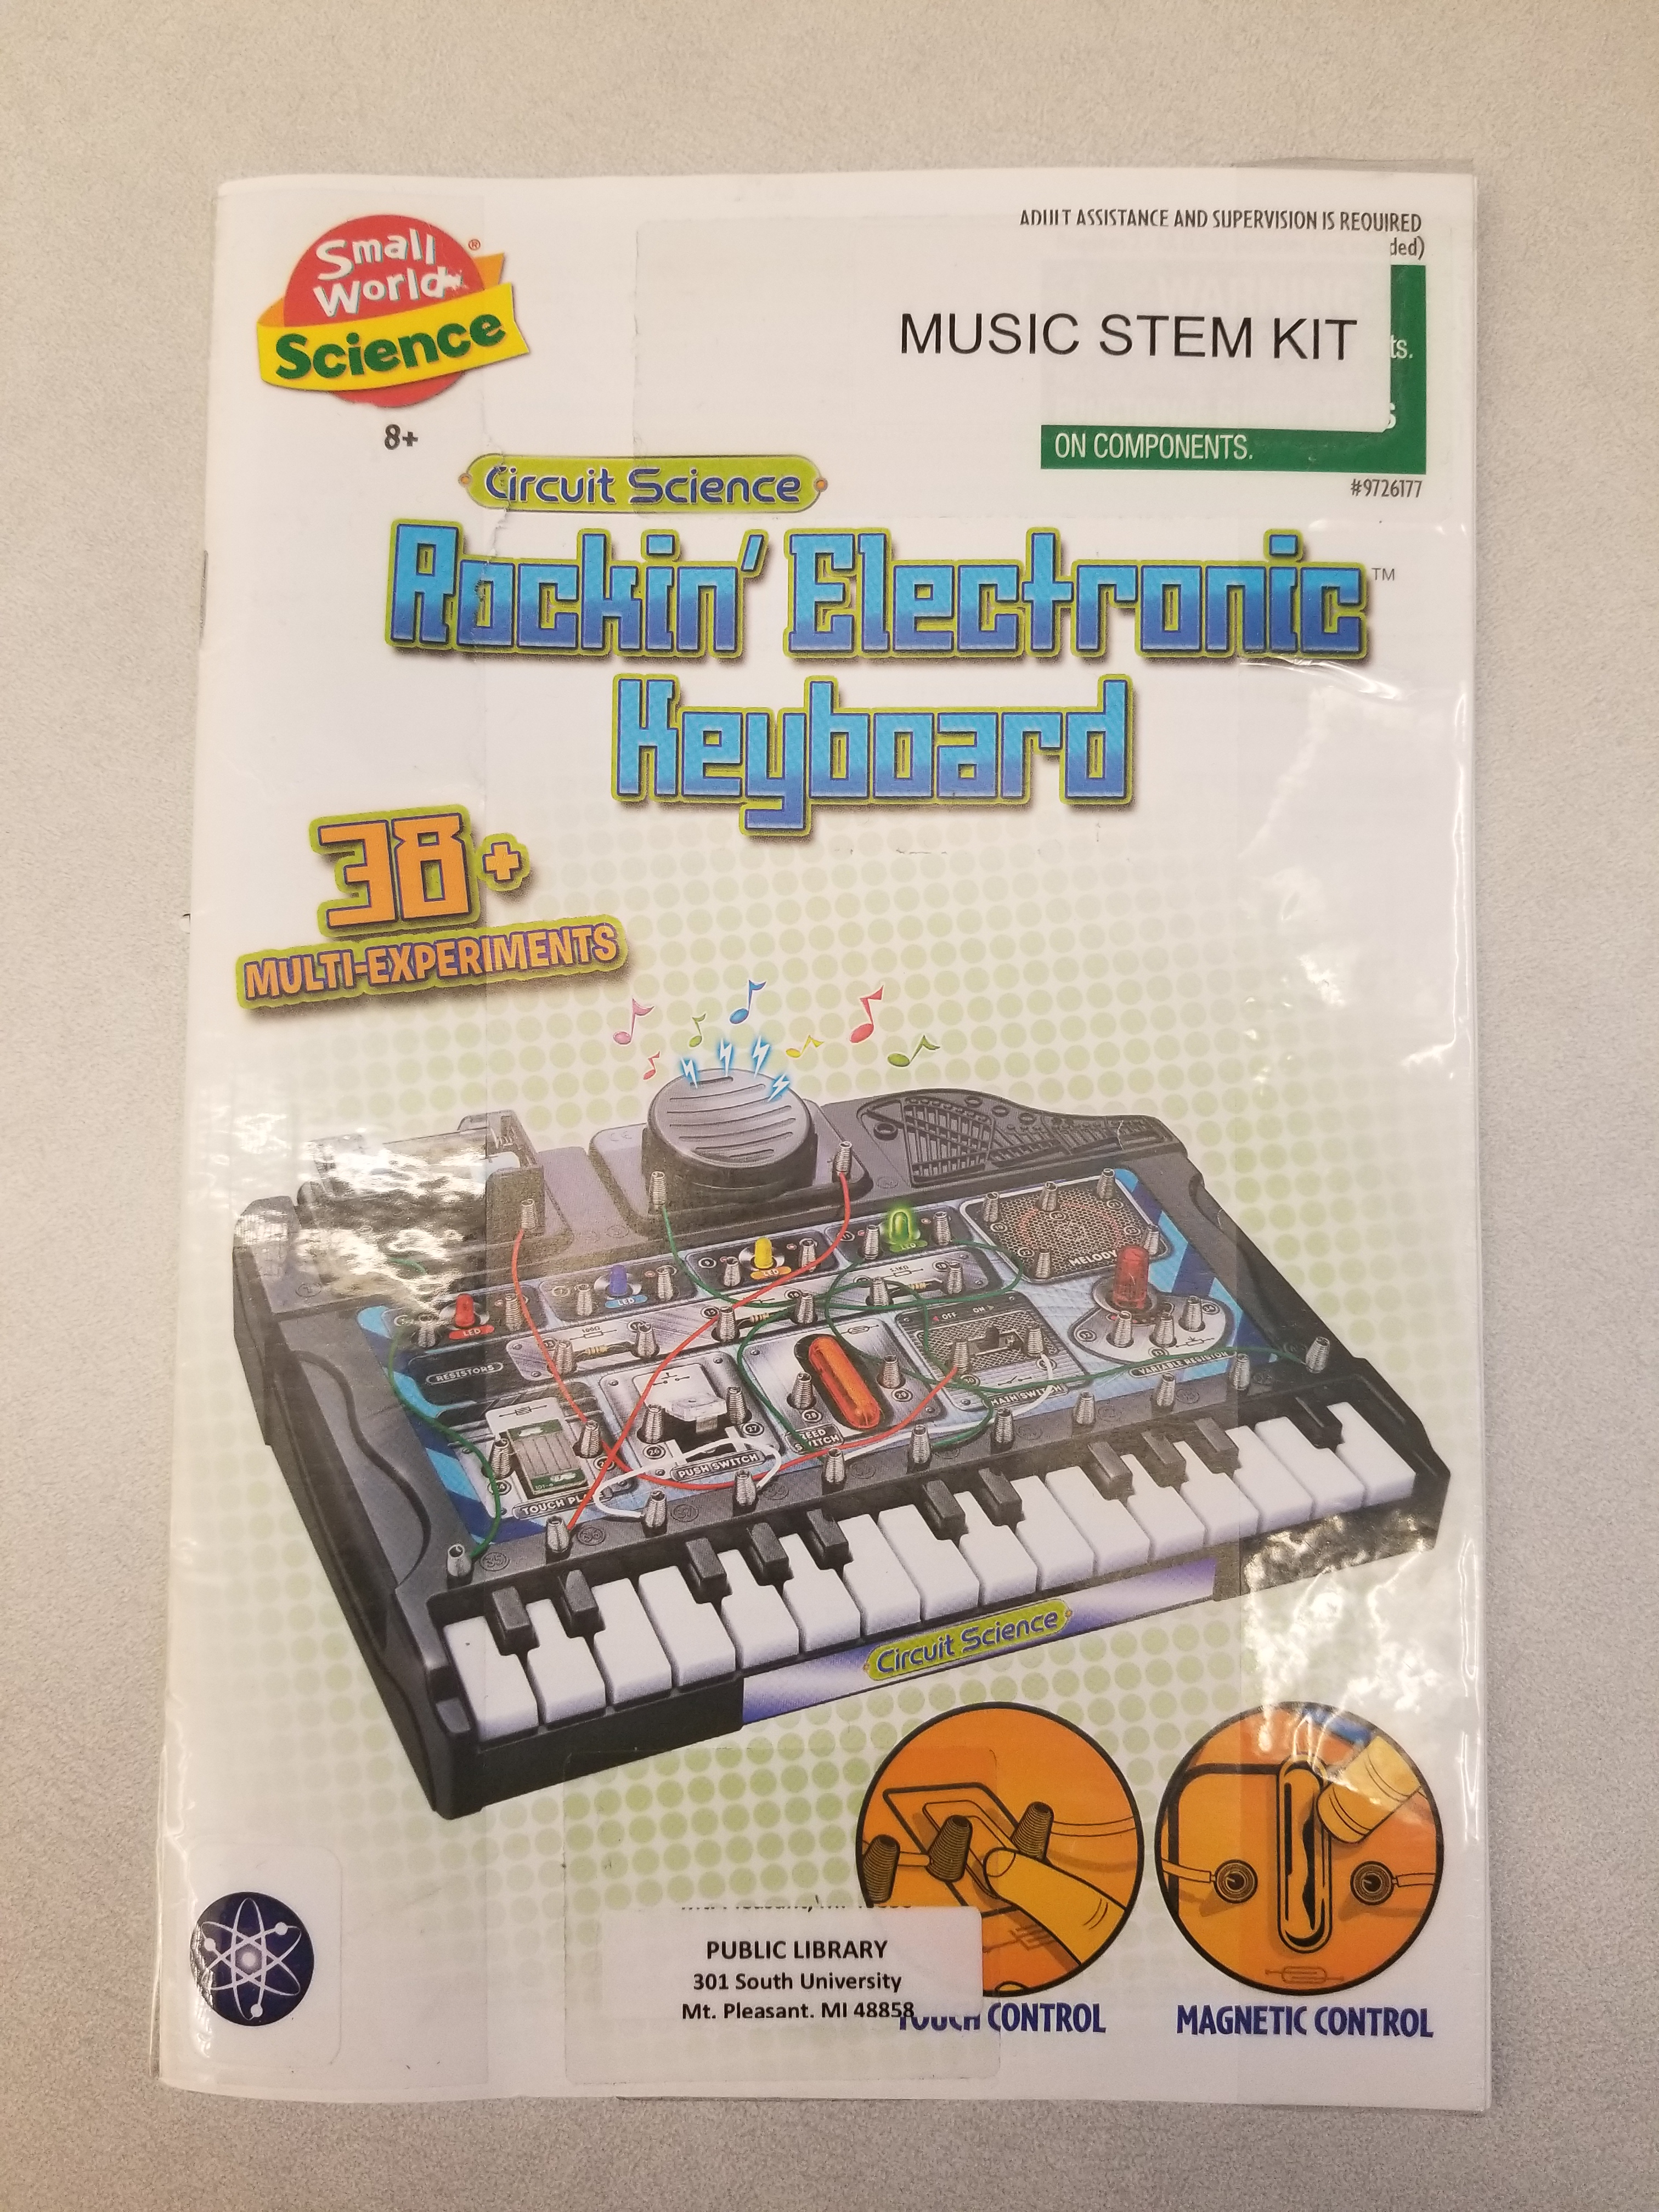 Music STEM kit, Rockin' Electronic Keyboard